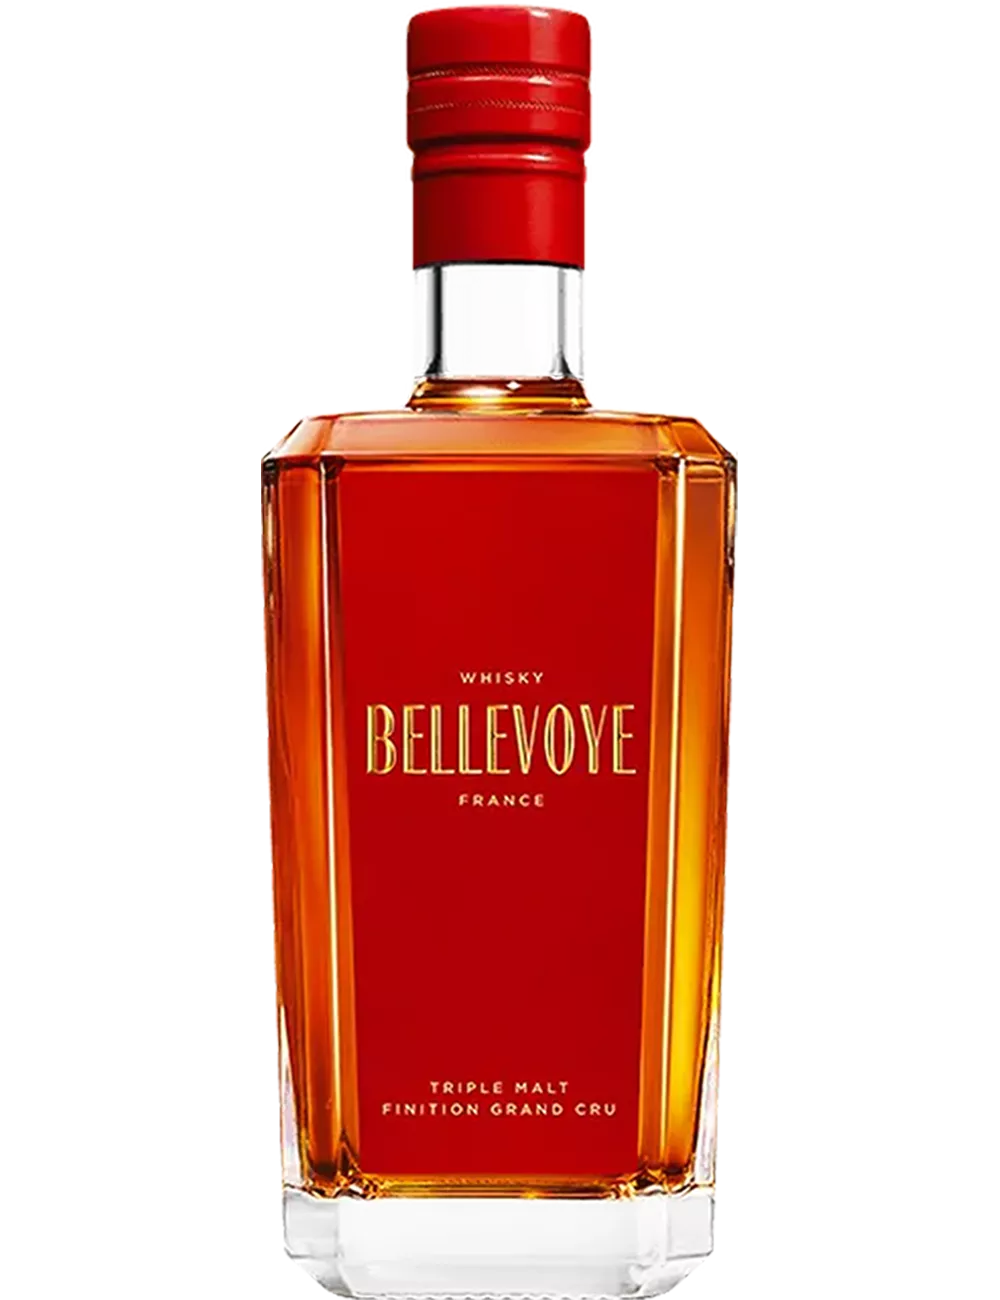 Bellevoye Rouge - Blended Malt